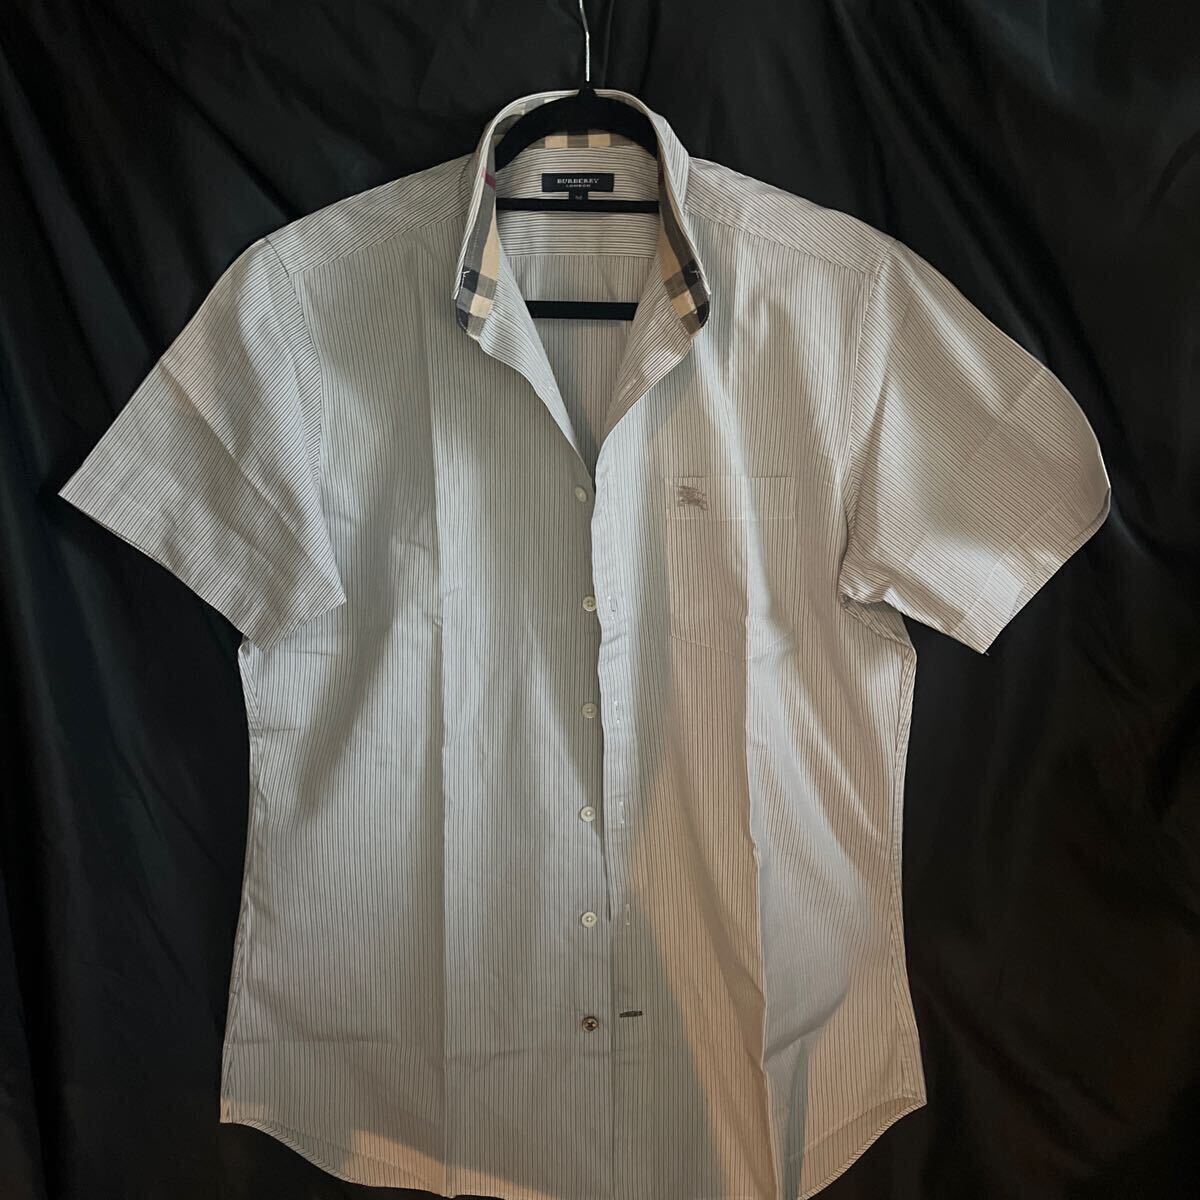  превосходный товар Burberry рубашка с коротким рукавом M шланг вышивка Logo noba проверка три . association полоса не использовался класс хлопок 85% глянец кнопка 